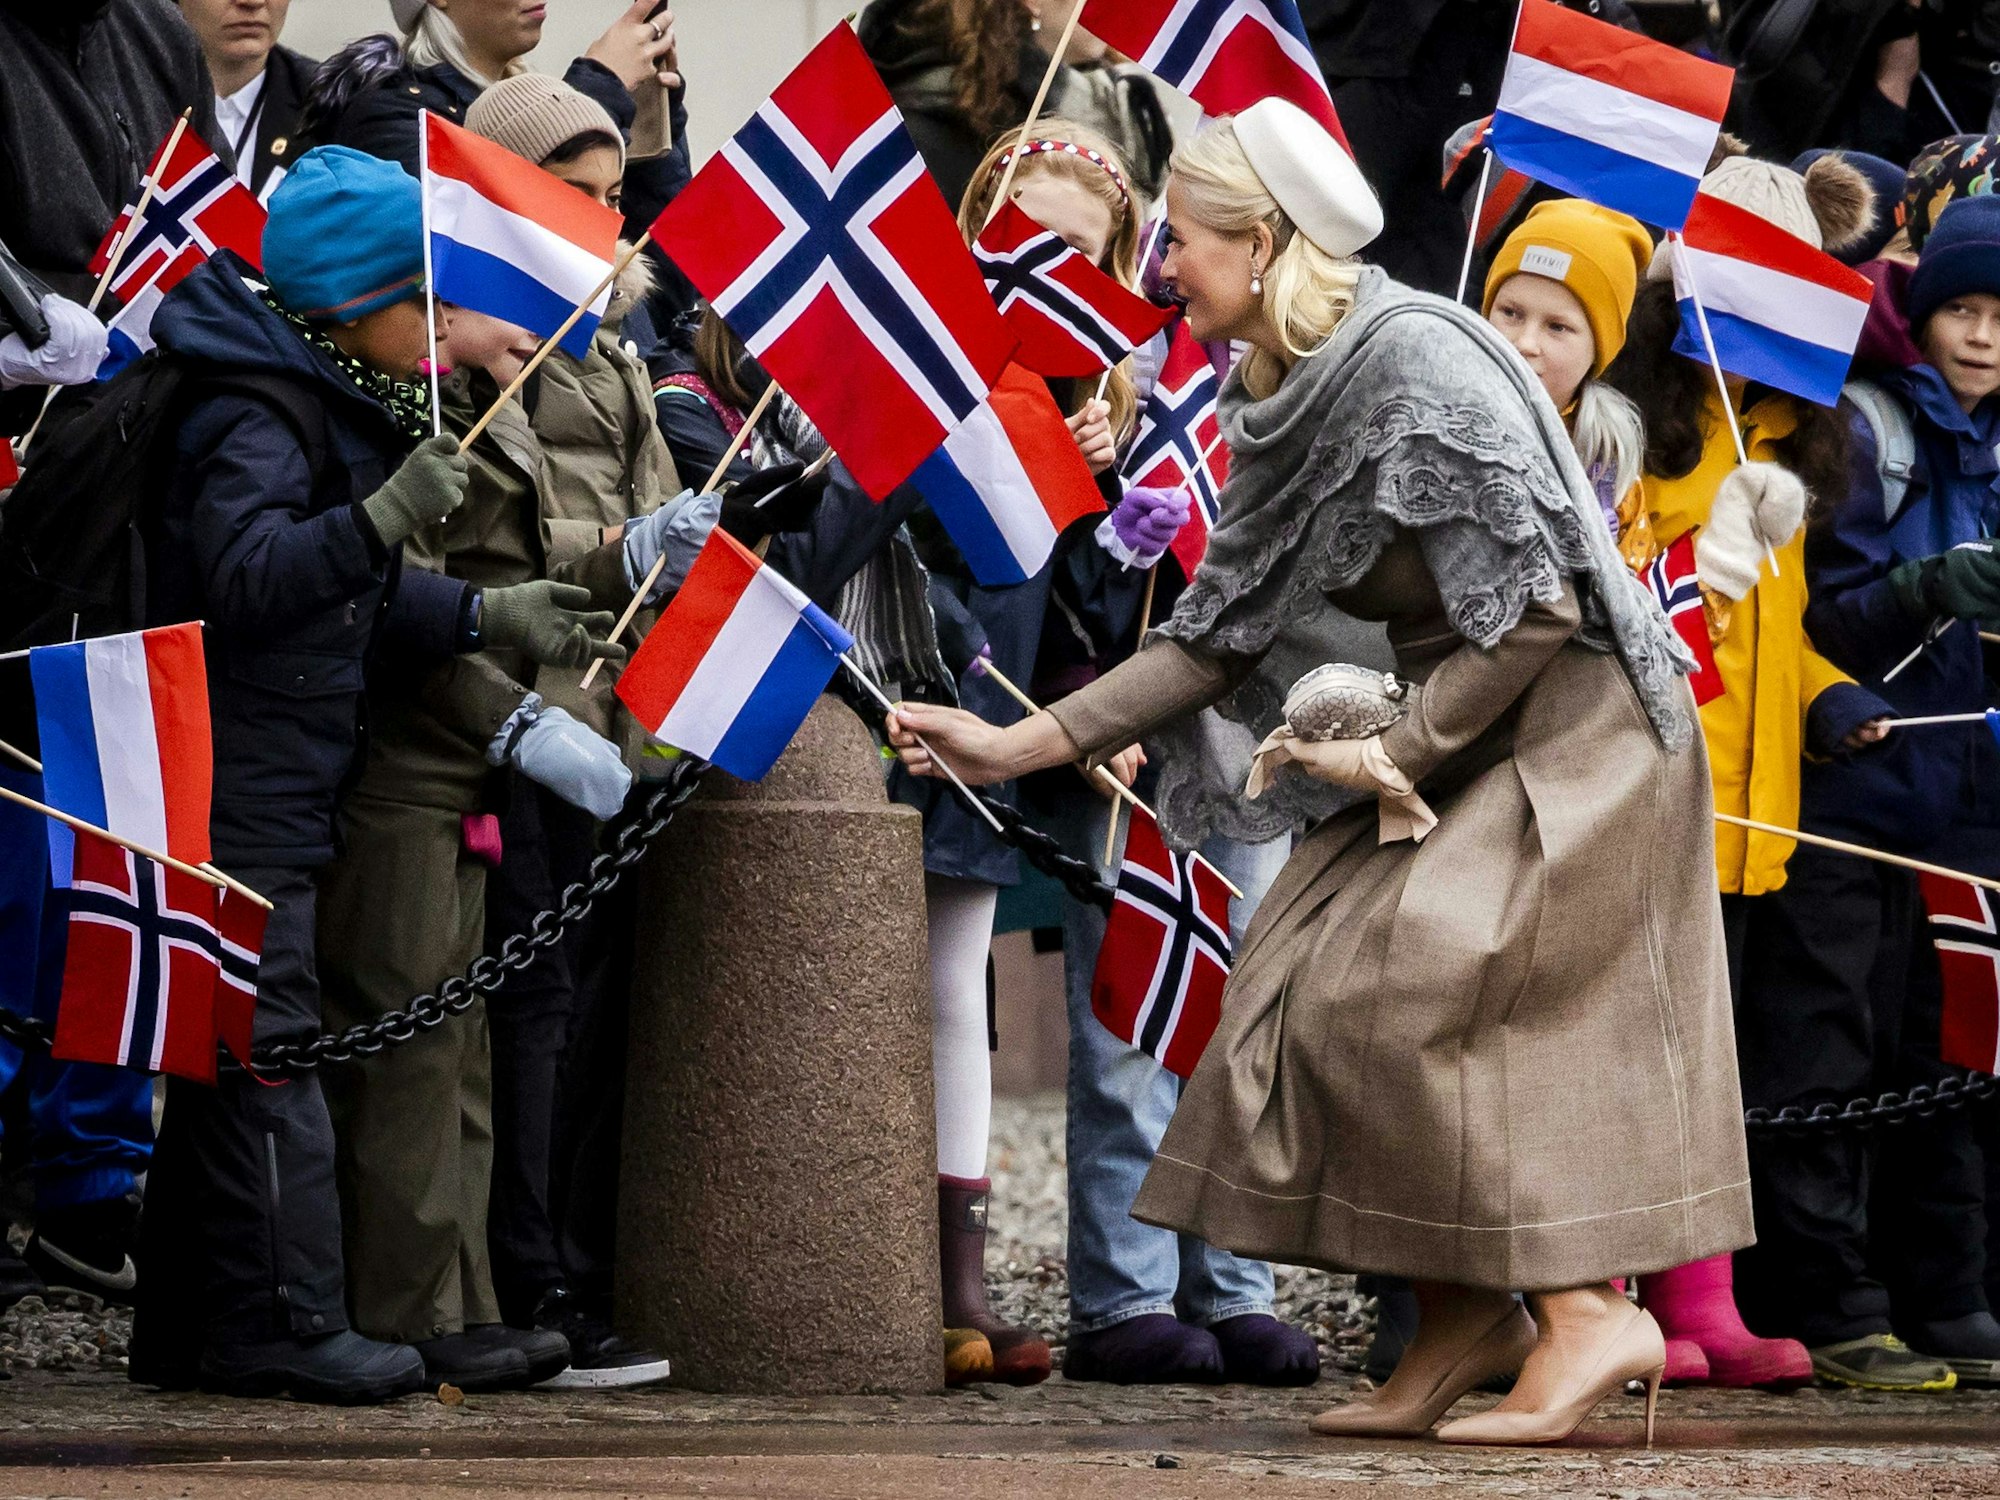 Kronprinzessin Mette-Marit von Norwegen kommt zu der Ankunft von König Willem-Alexander der Niederlande und Königin Maxima der Niederlande im Königspalast.